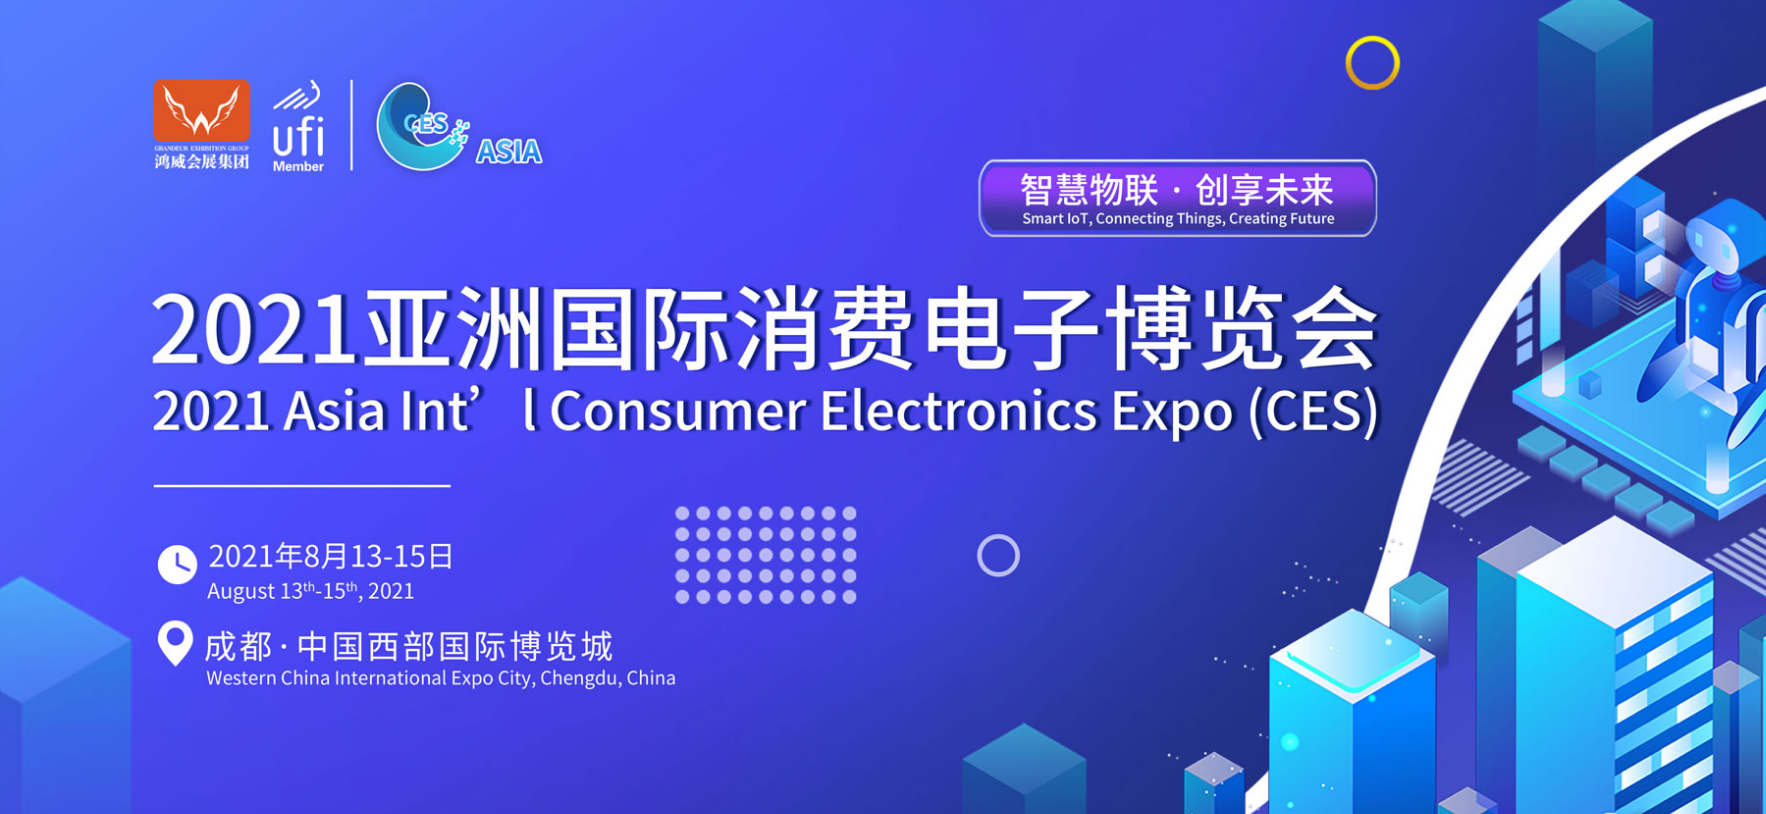 消费电子最新技术及终端应用领域专业展会——2021亚洲国际消费电子博览会